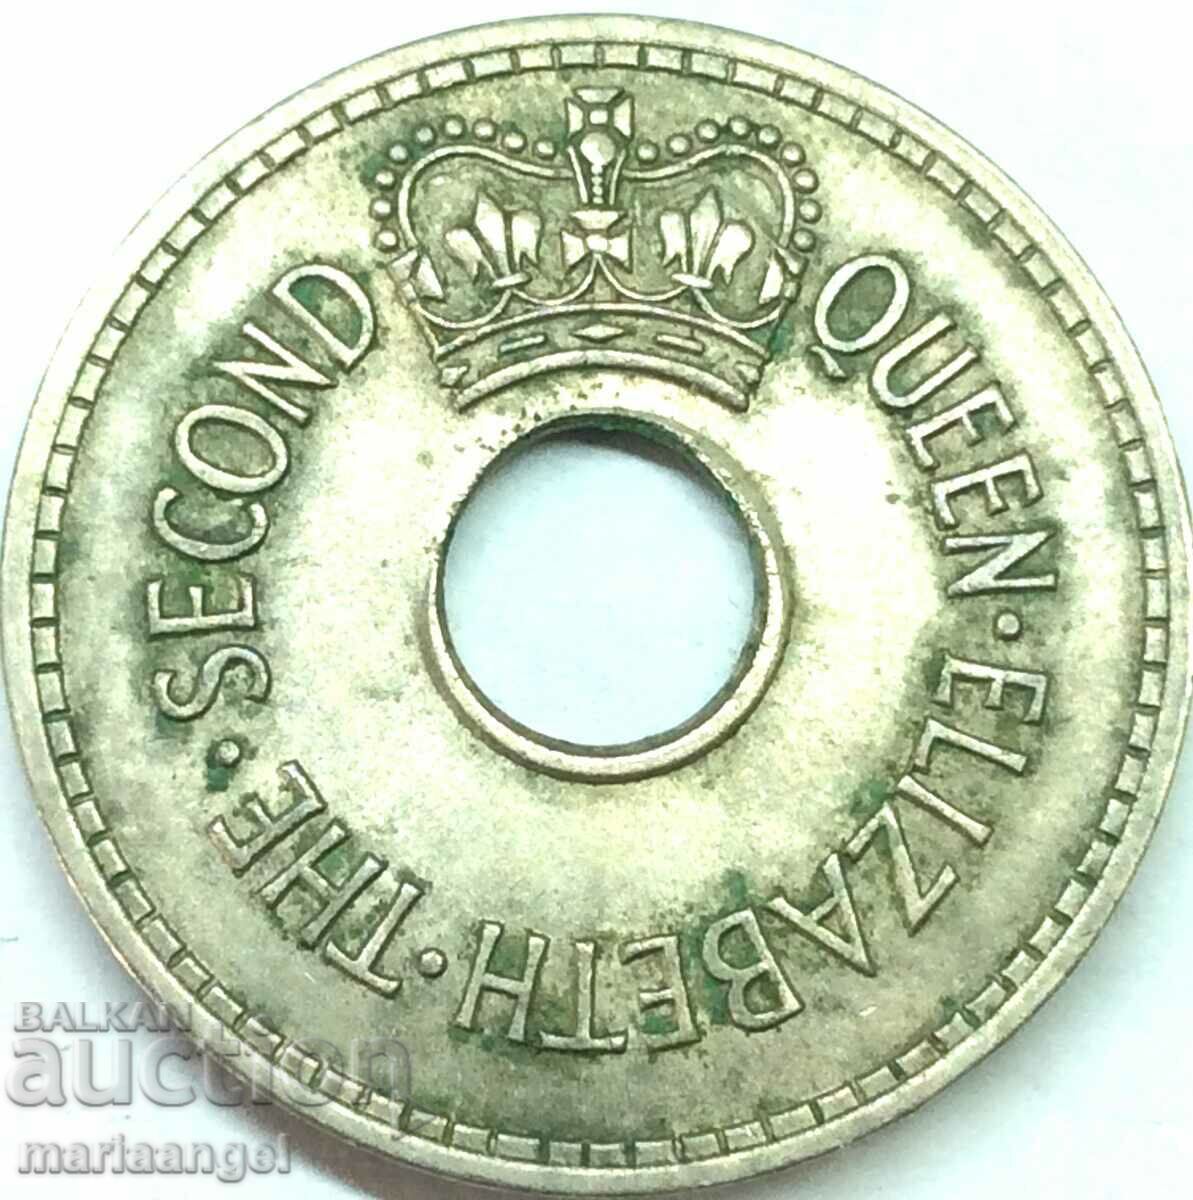 Fiji 1965 1 penny